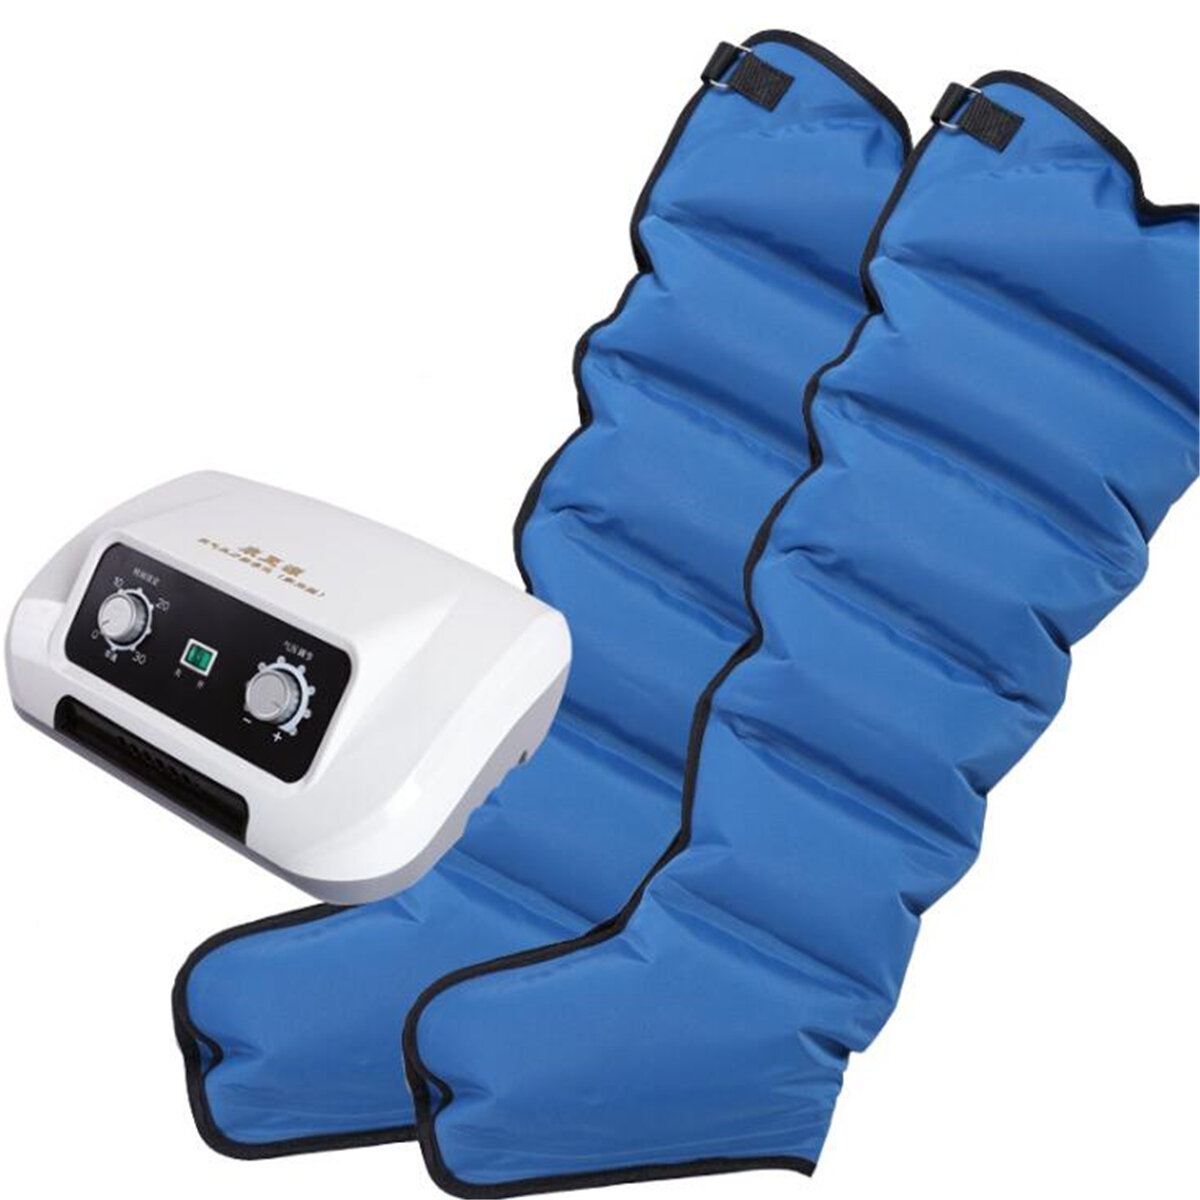 

6 Воздушные камеры Массажер для сжатия ног Талия для рук Расслабленный массаж с циркуляцией под давлением Электрический